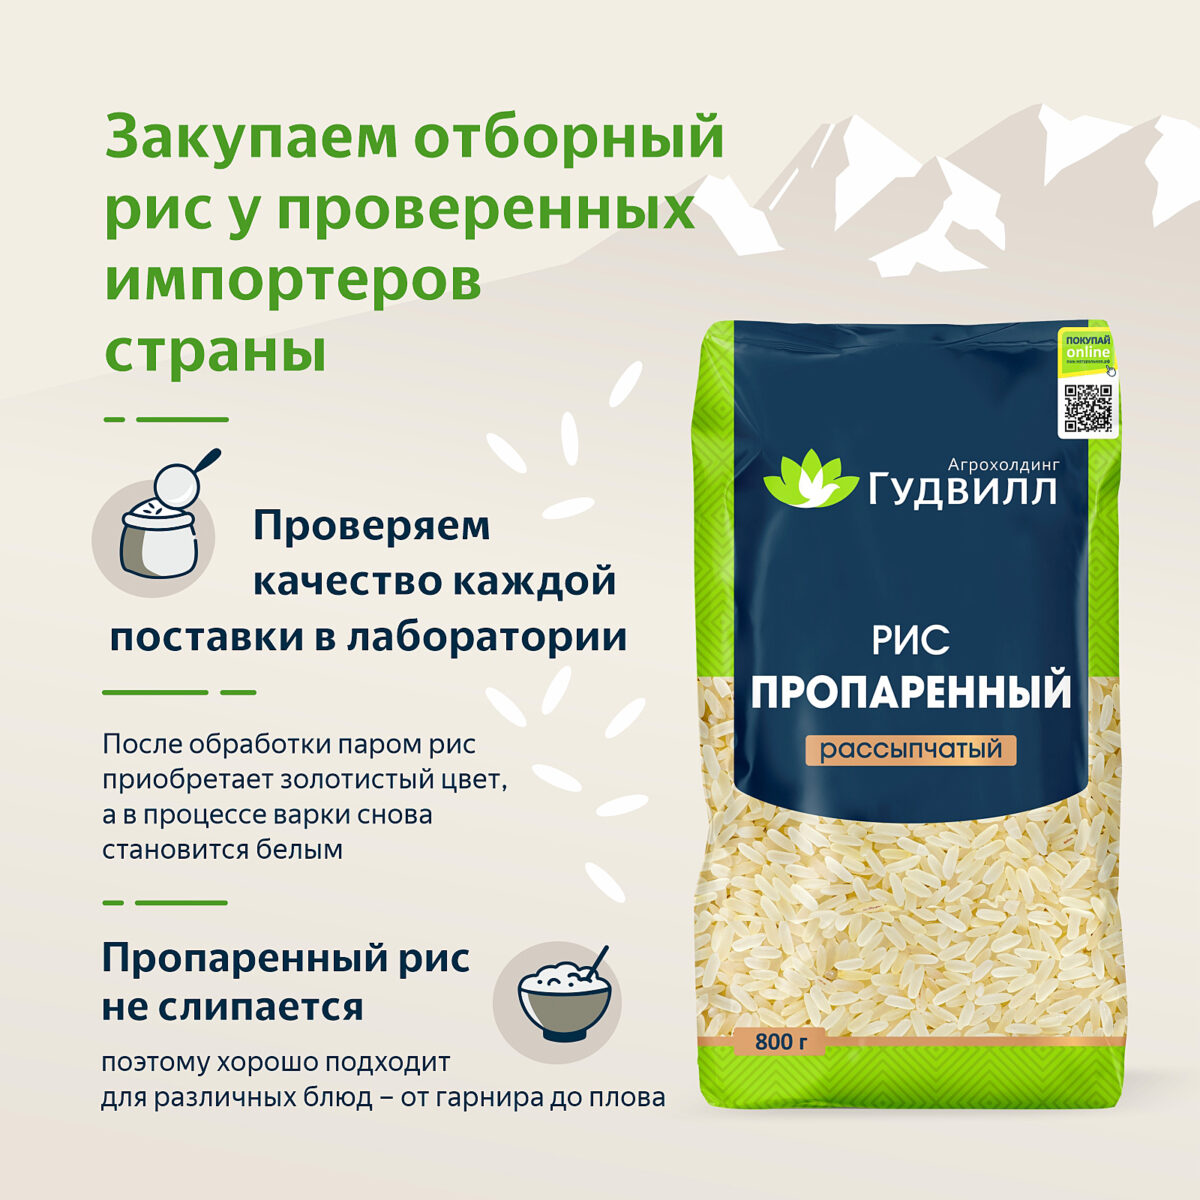 Рис пропаренный Рассыпчатый 800 гр. Алтайские крупы - Интернет-магазин